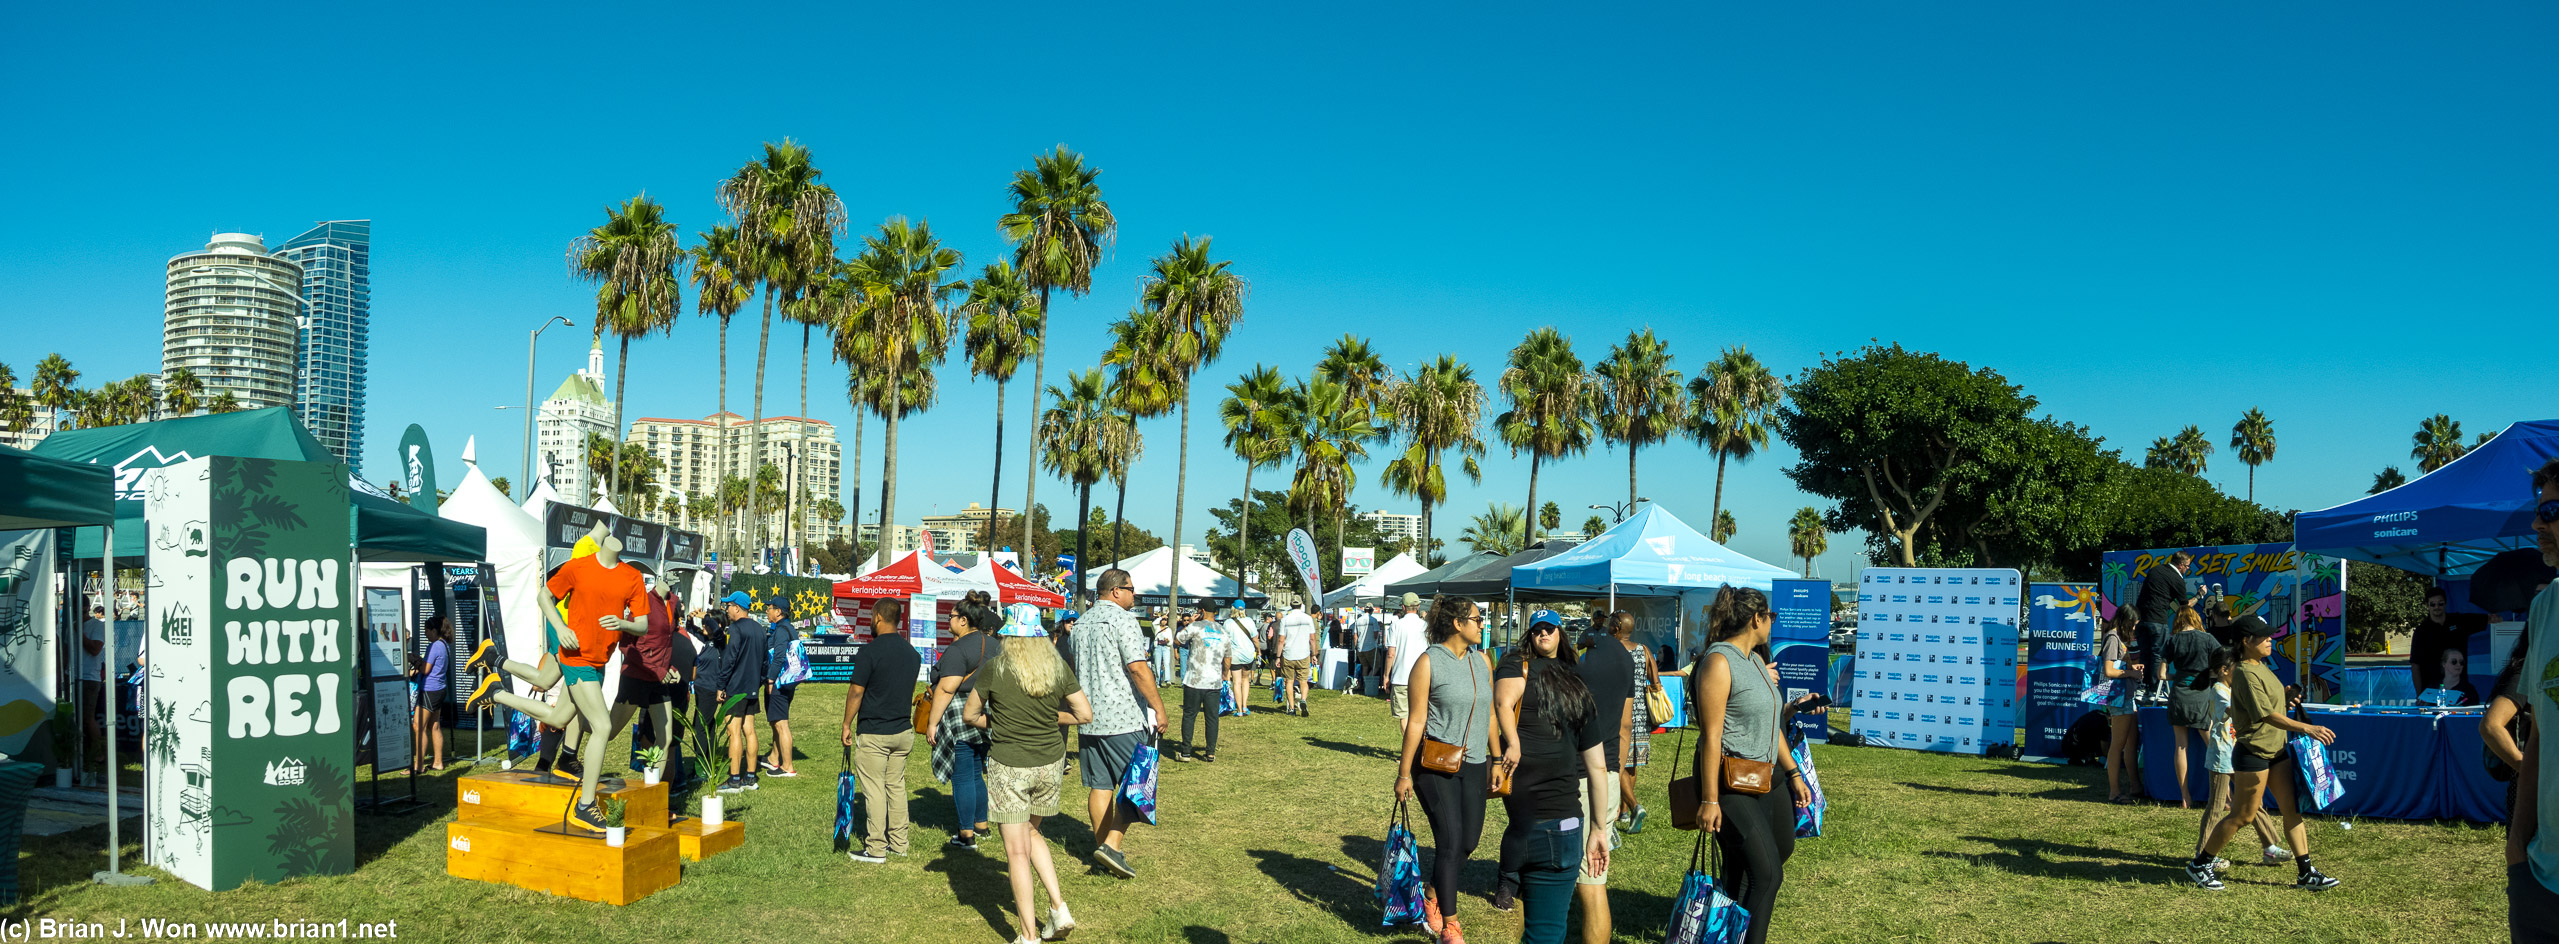 Long Beach Marathon Expo, held at Marina Green Park.